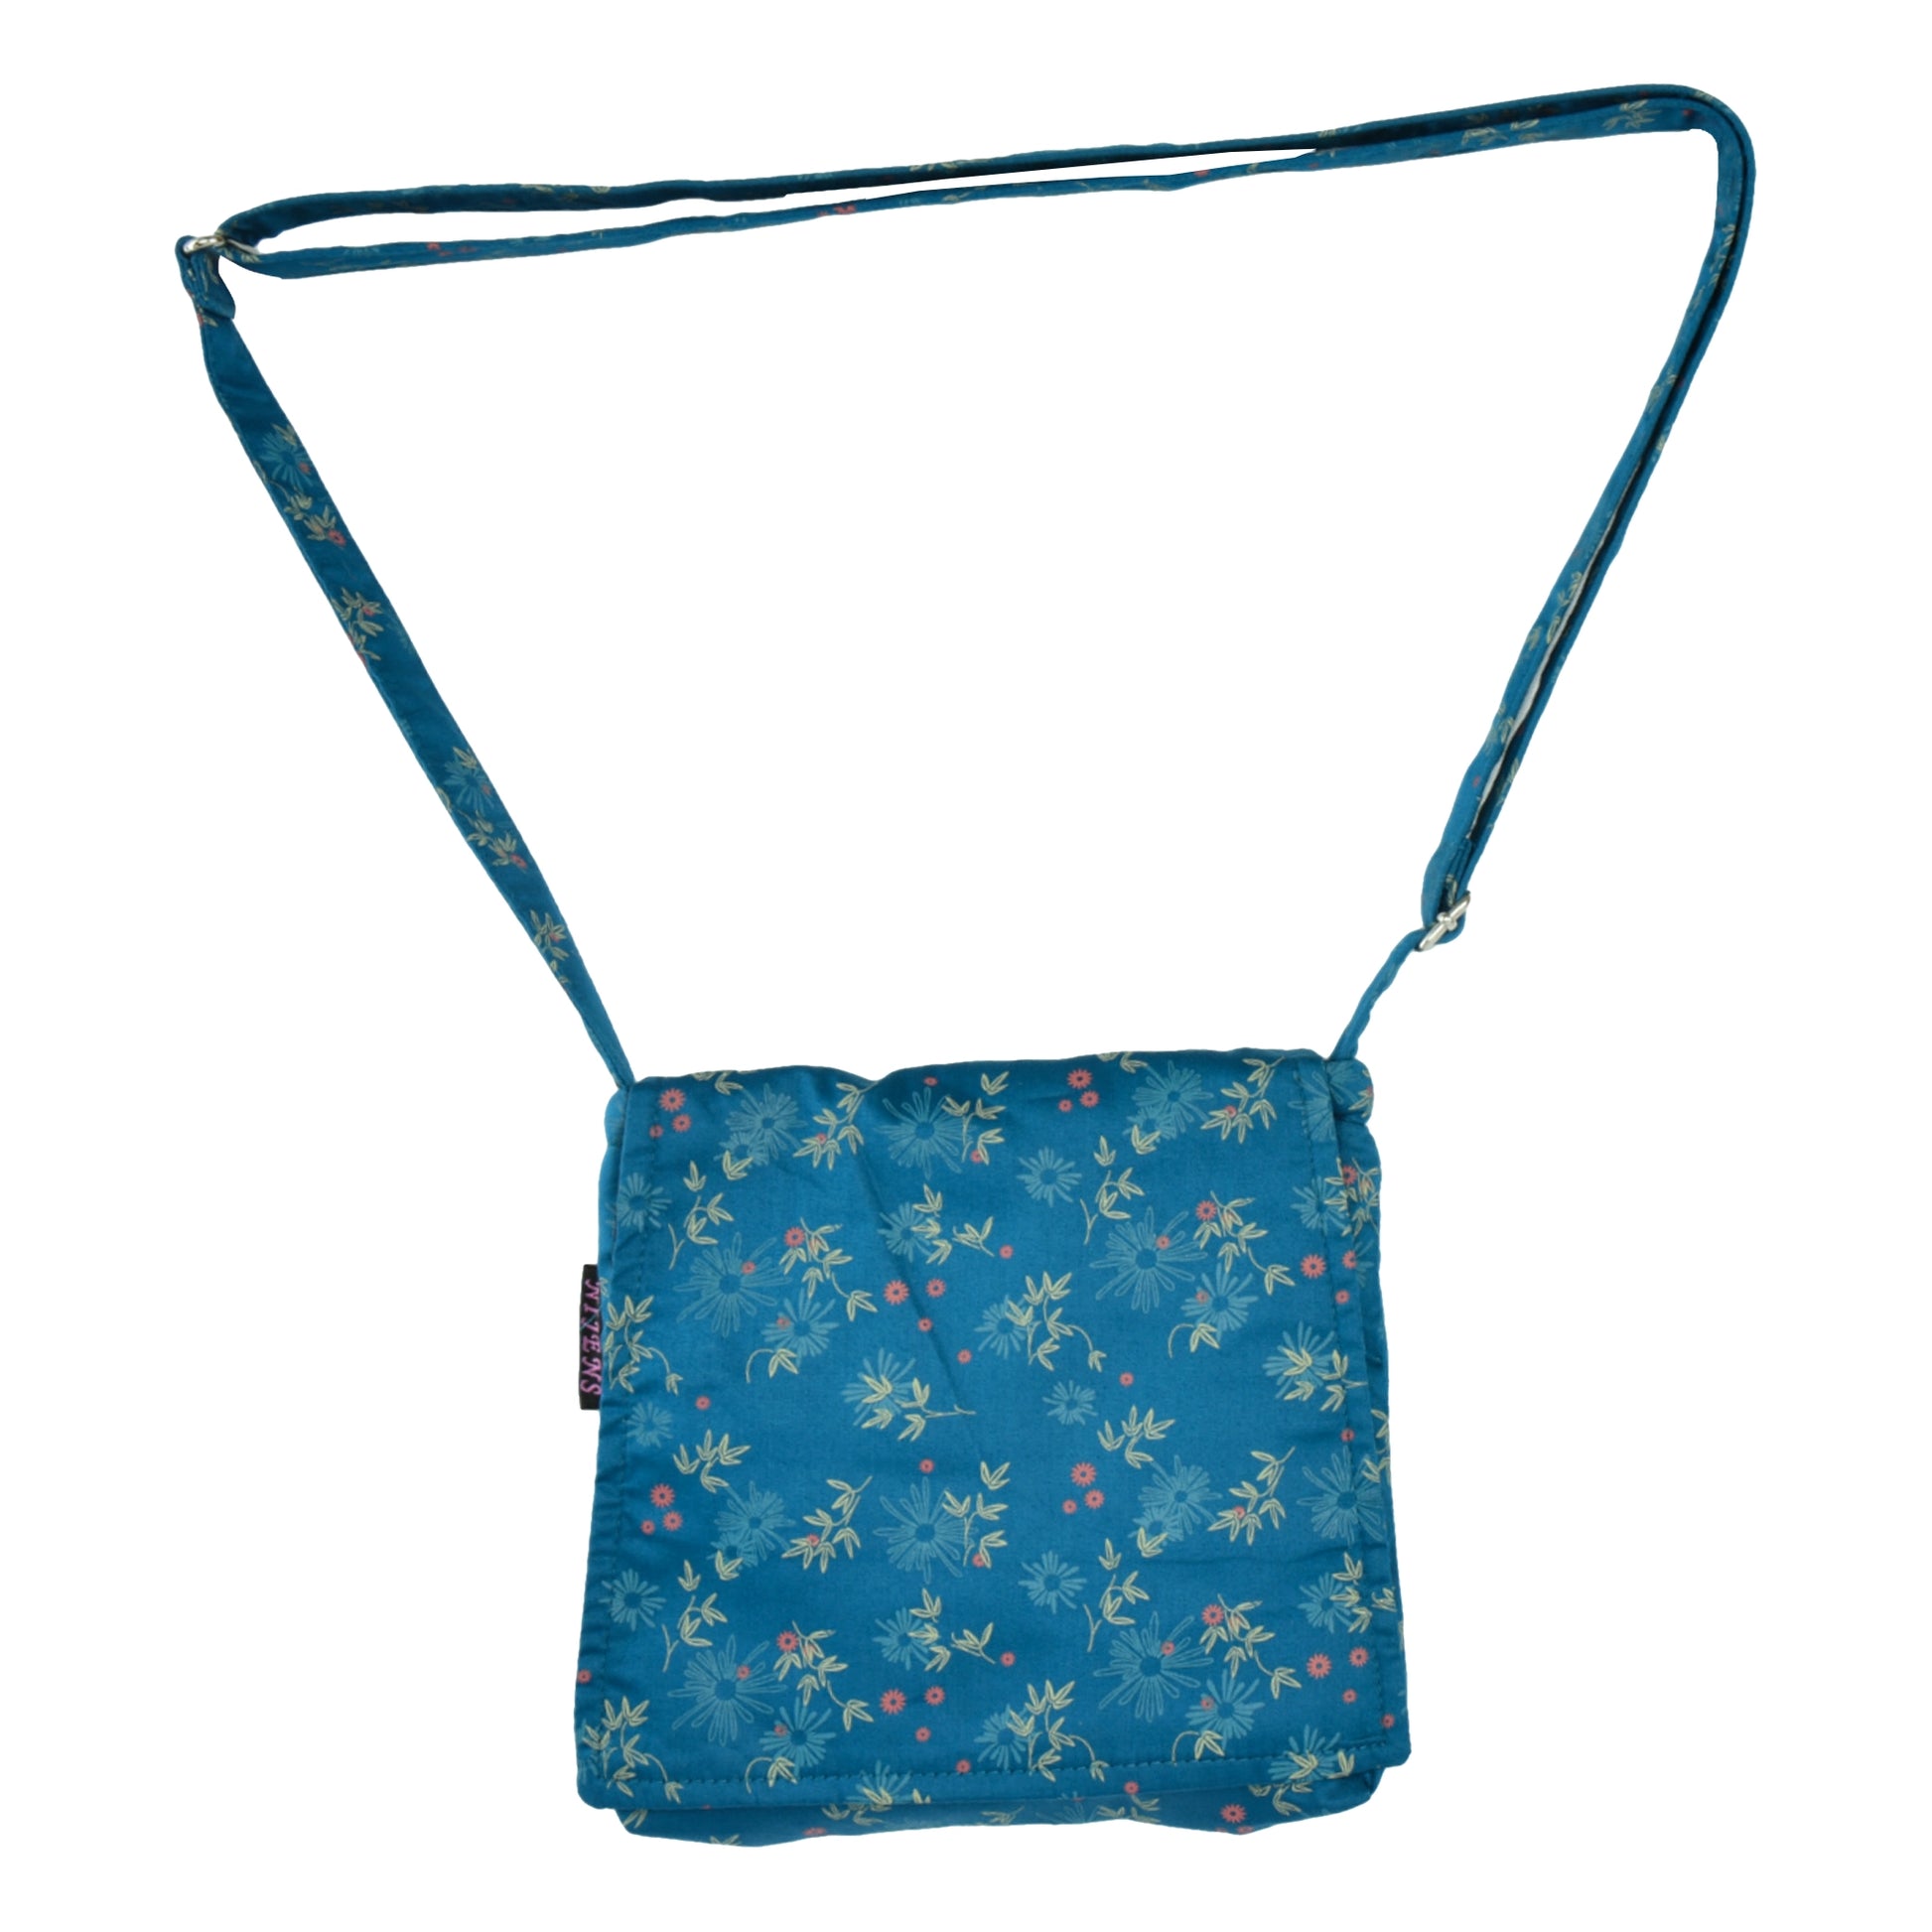 Kleine Tasche, Umhängetasche aus Baumwolle, Seidenblau mit Blättern und Blumenmotiven. Ein Hauptfach mit Einsteckfach und jeweils ein Reißverschlussfach vorne und hinten. Der Tragegurt ist stufenlos verstellbar.